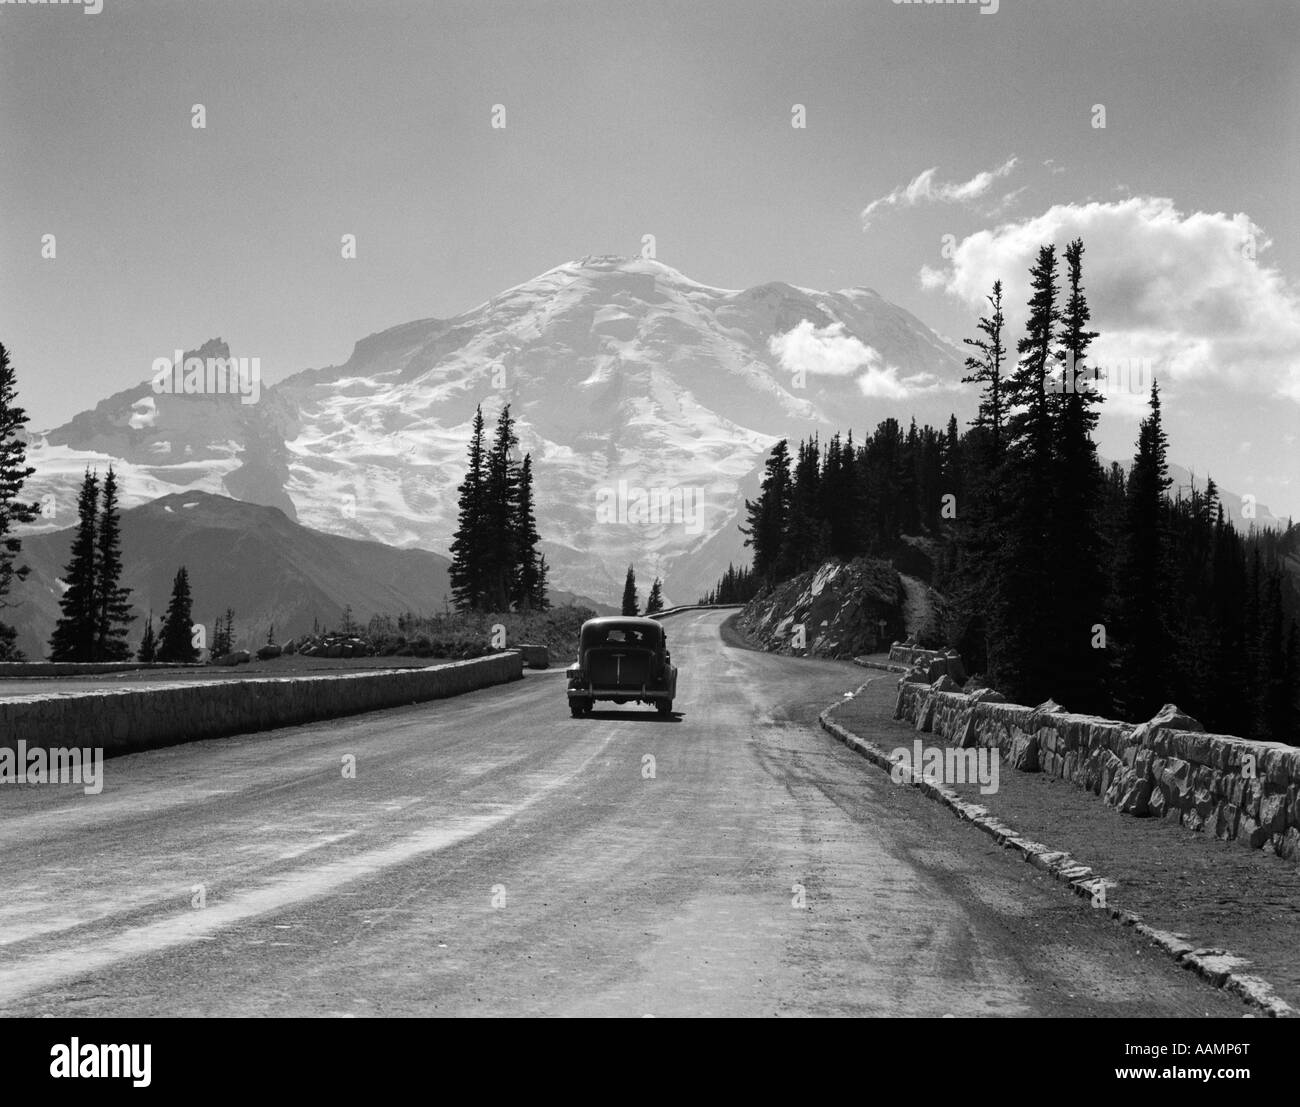 La CONDUITE AUTOMOBILE BERLINE 1930 ROUTE DE HAUTE MONTAGNE ENNEIGÉES vers le mont Rainier dans l'État de Washington USA Banque D'Images